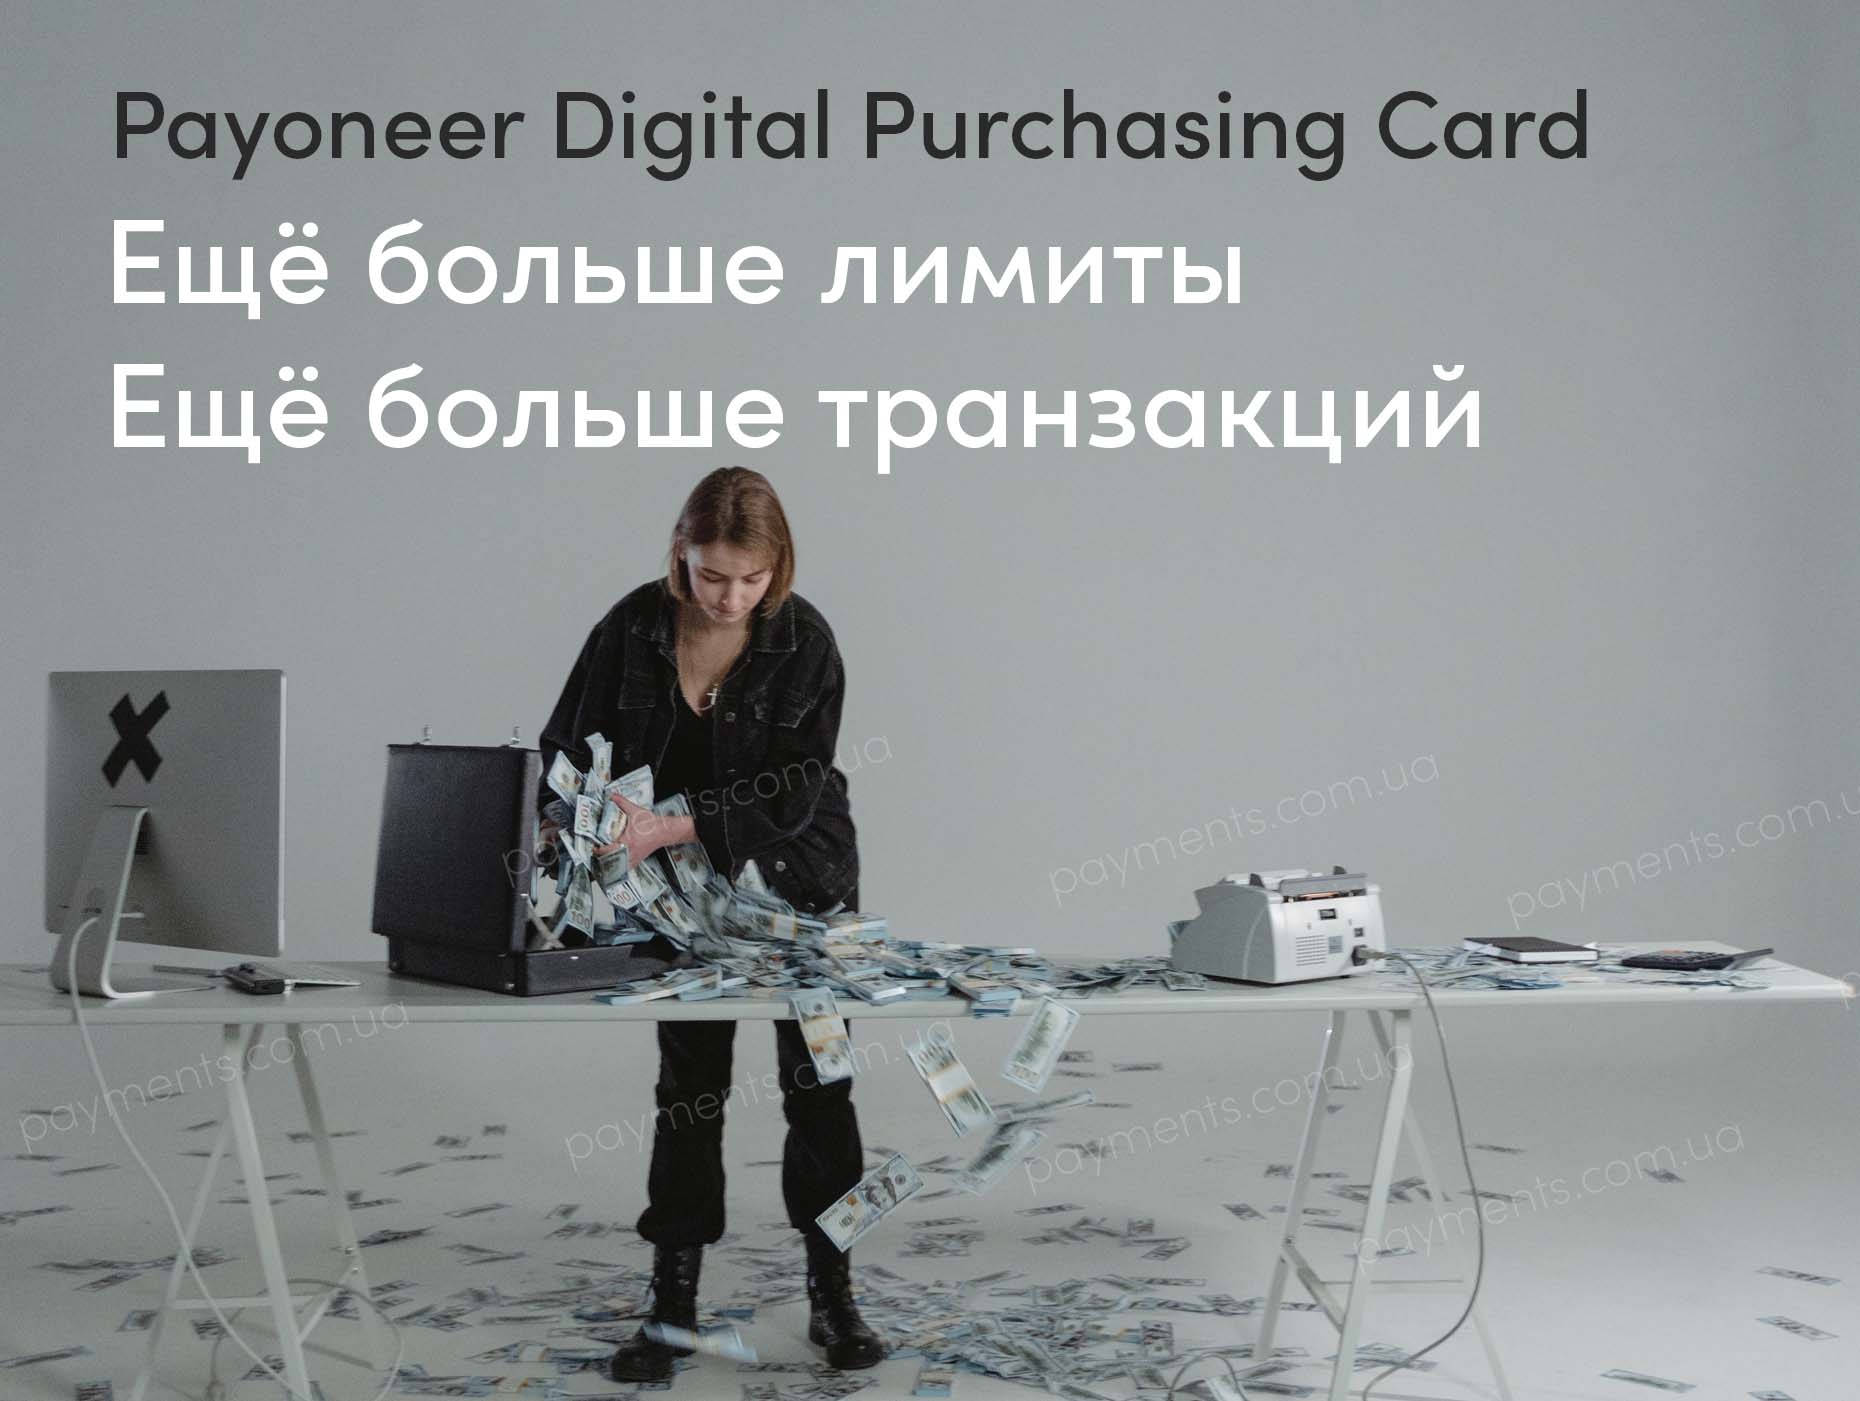 виртуальная карта Payoneer Digital Purchasing Card